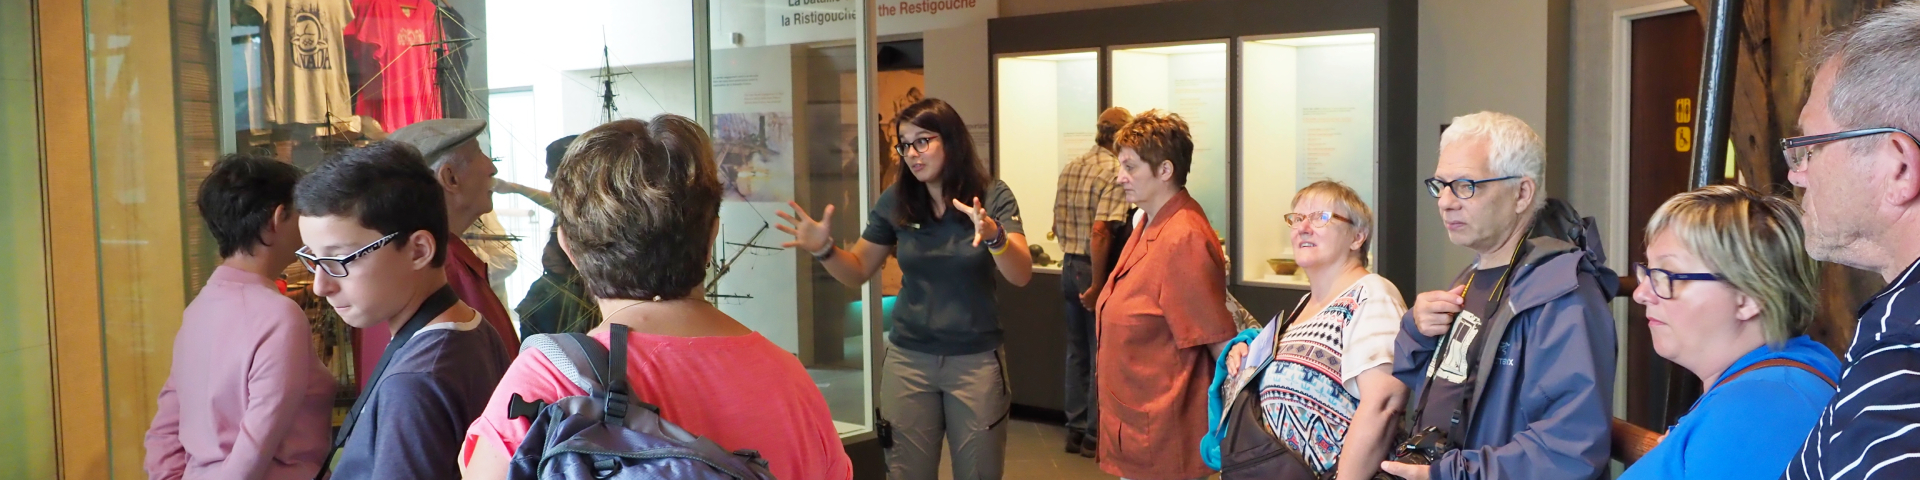 Un groupe de voyageurs dans un musée écoutent une guide interprète. 